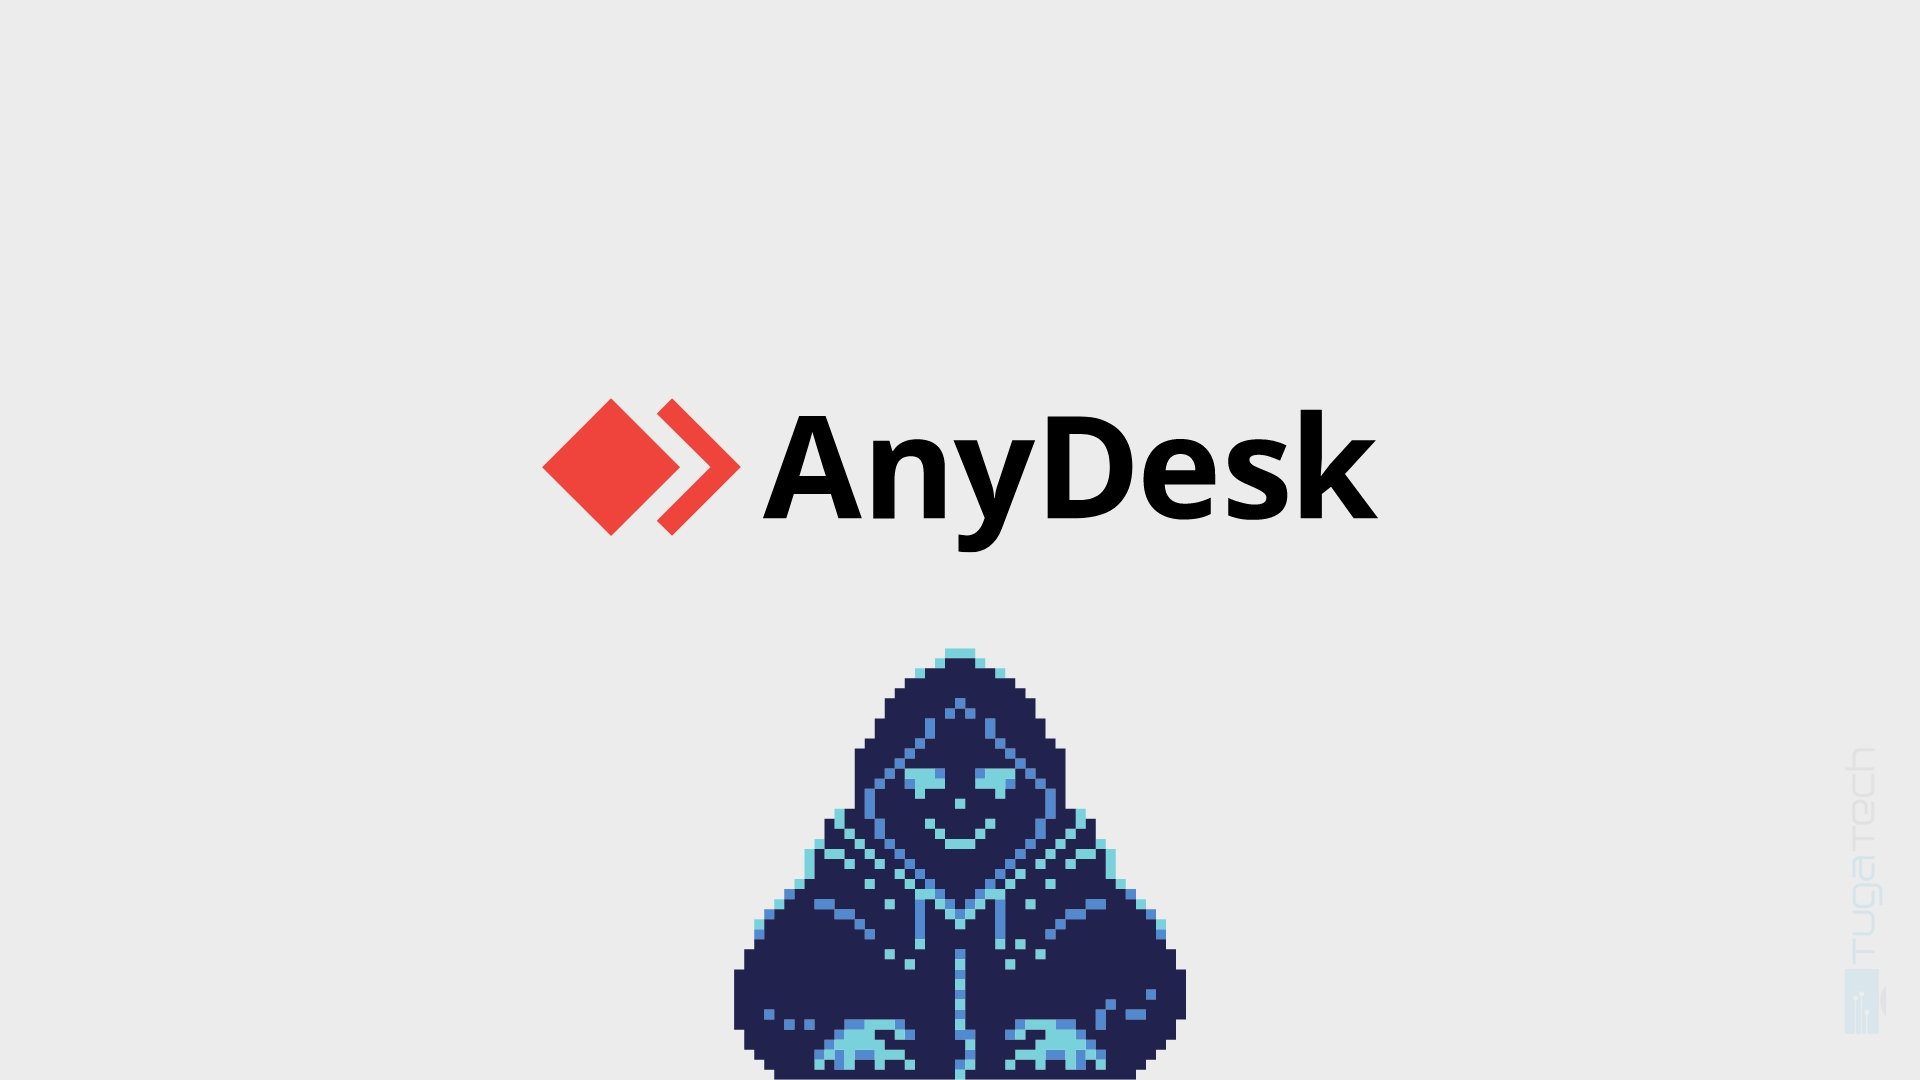 AnyDesk confirma ter sofrido ataque informático em sistemas centrais